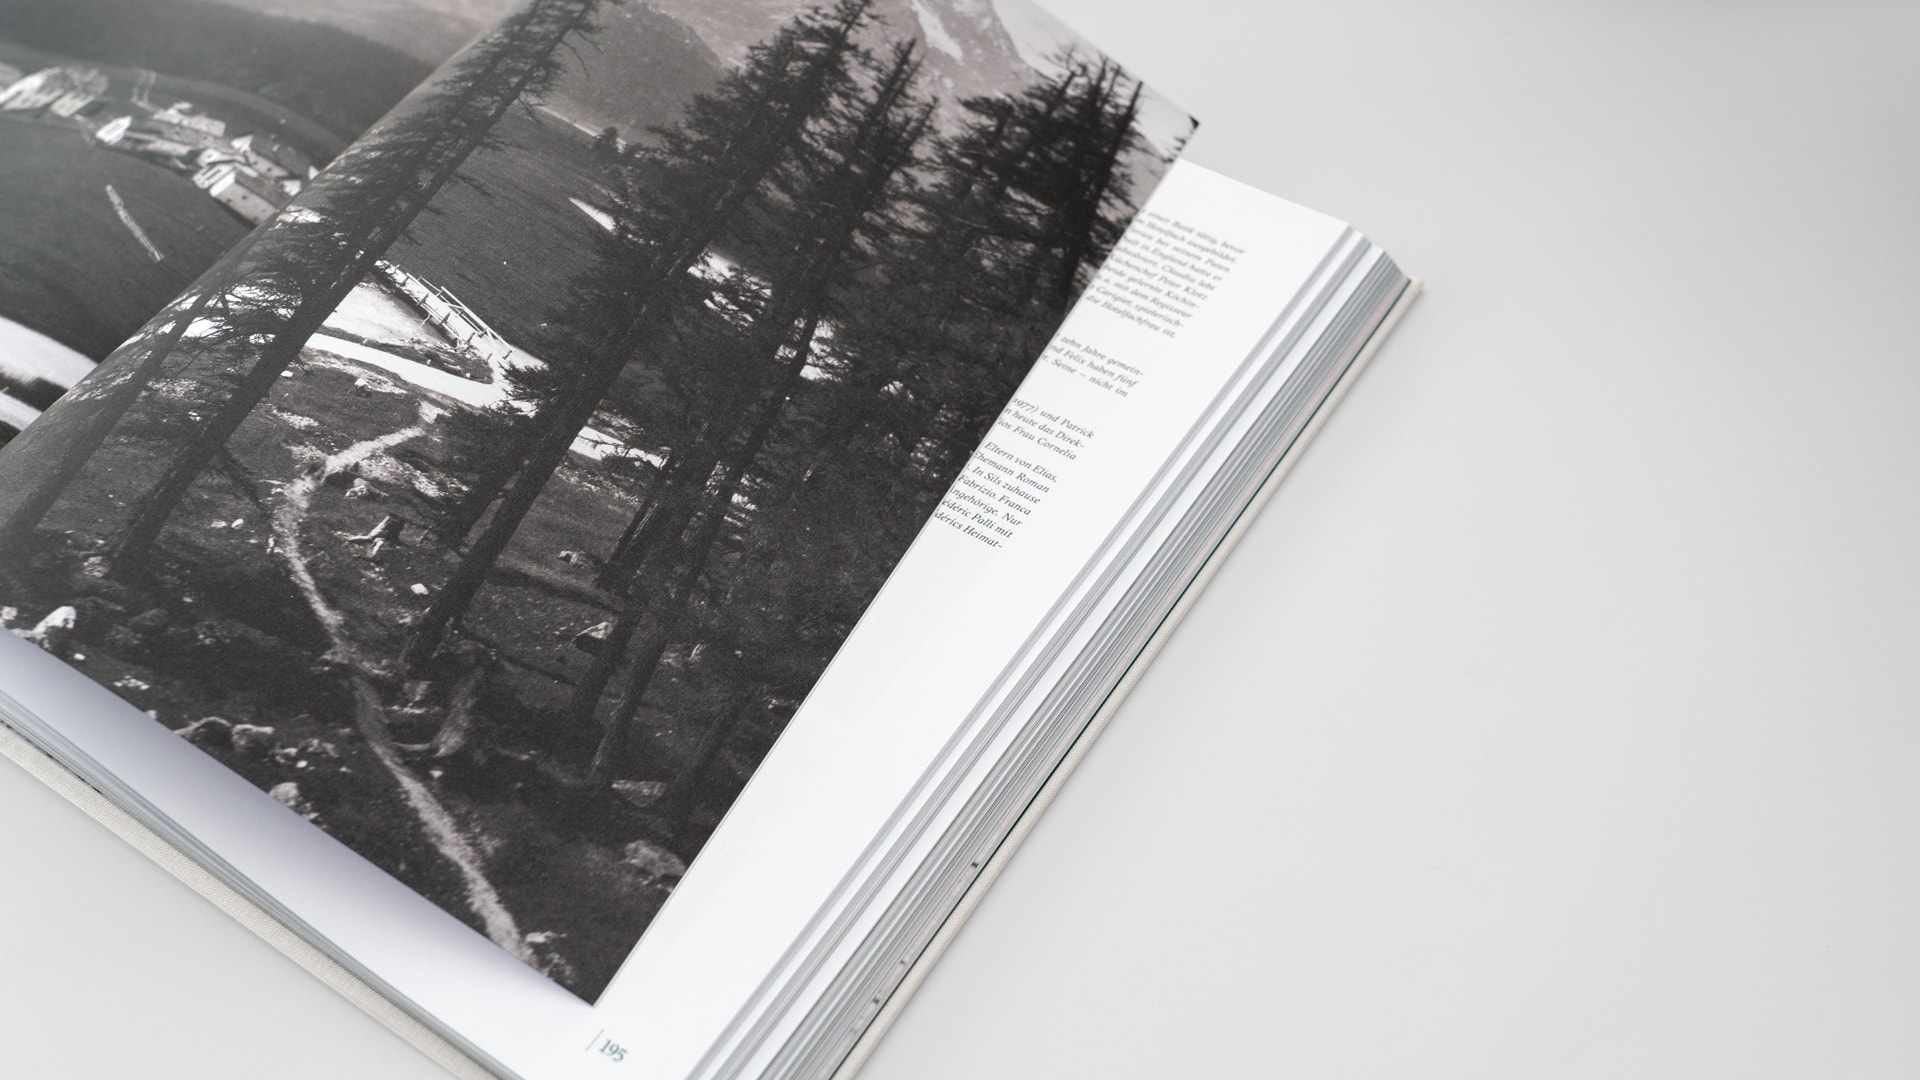 Silser Familienfotografien – Buchgestaltung für die Edition Stephan Witschi — l’équipe visuelle — Grafikatelier